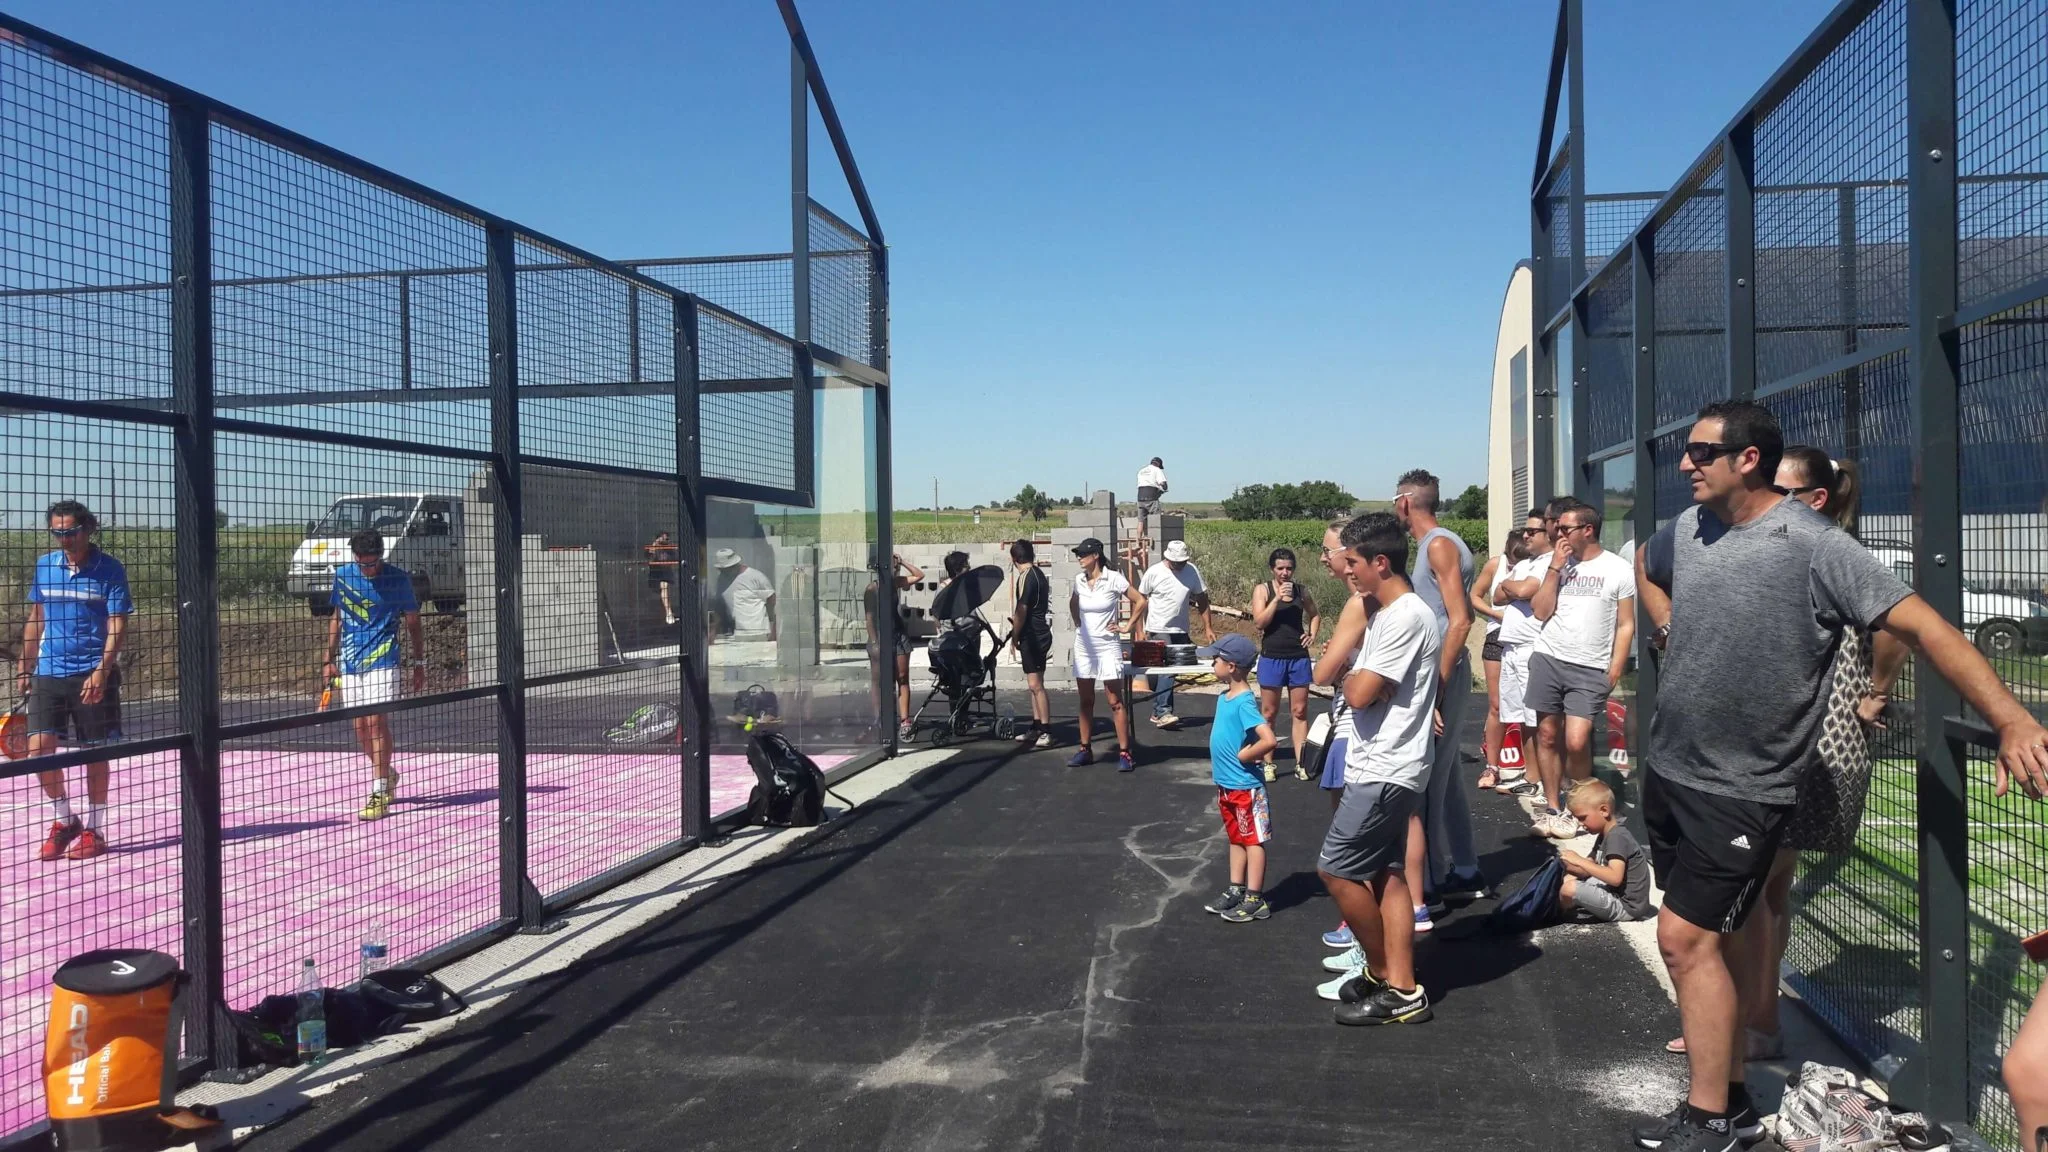 O Tennis Club de la Vière: “Um verdadeiro padel"